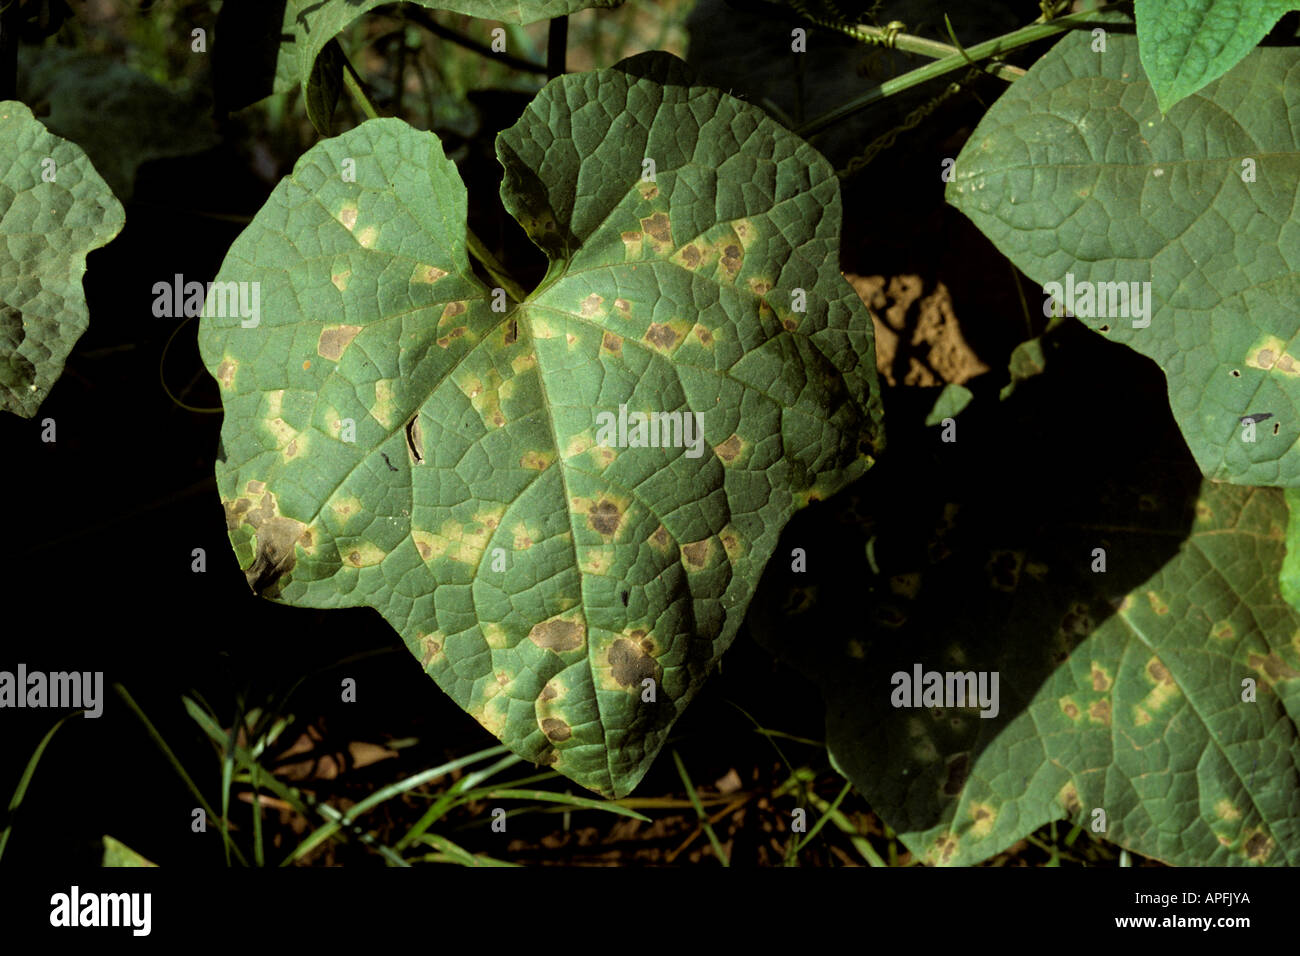 Downy mildew Pseudoperonospora cubensis symptoms on squash leaves Thailand Stock Photo